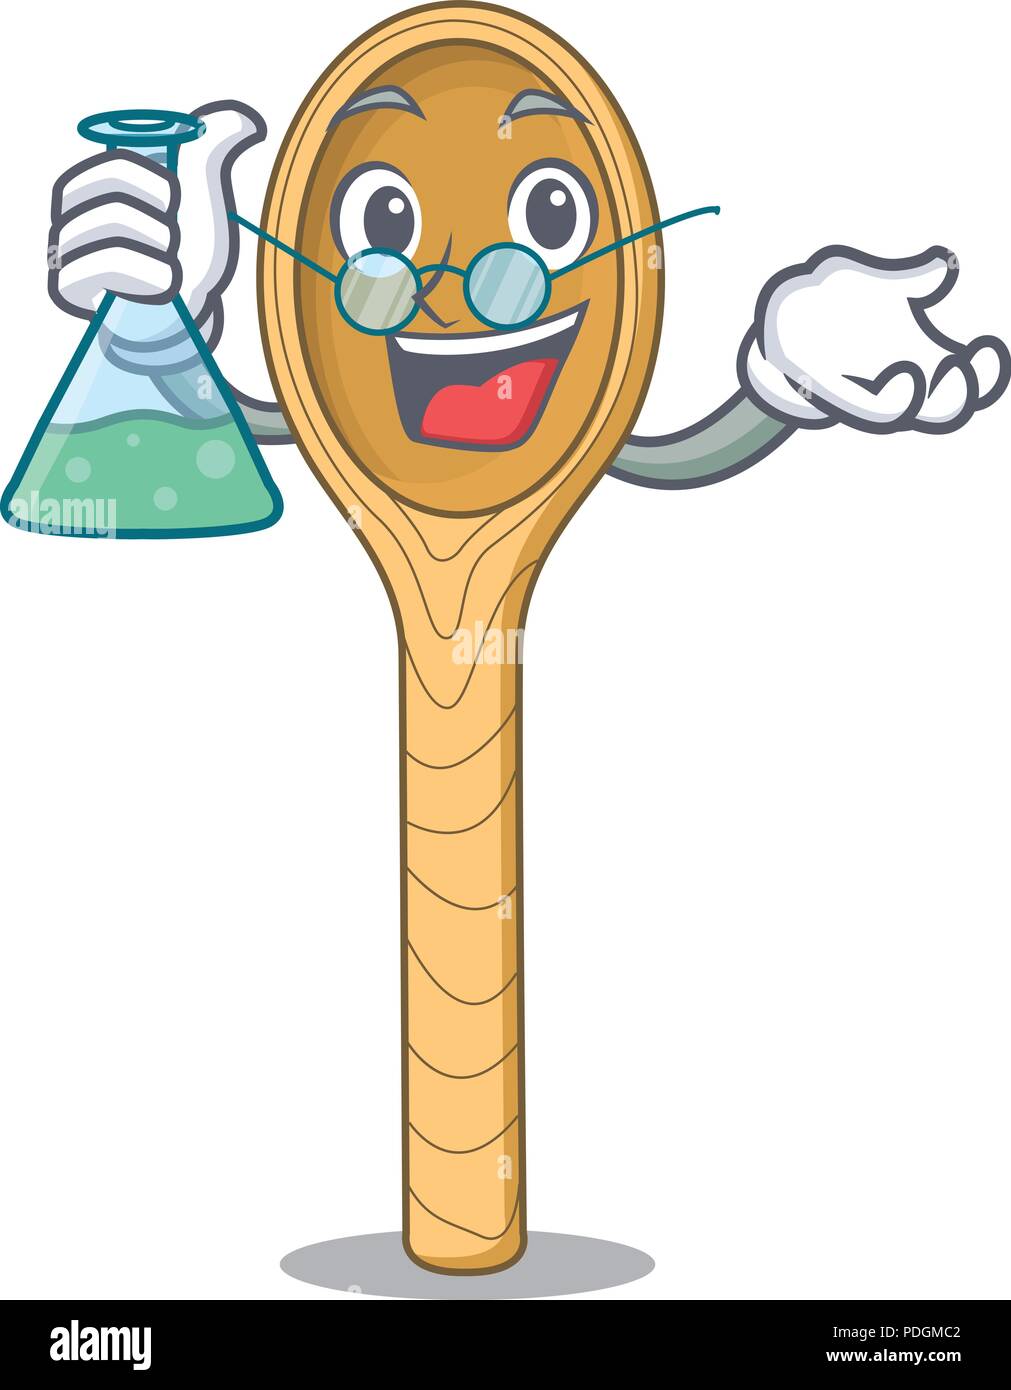 Professor wooden spoon character cartoon Stock Vector Image & Art - Alamy